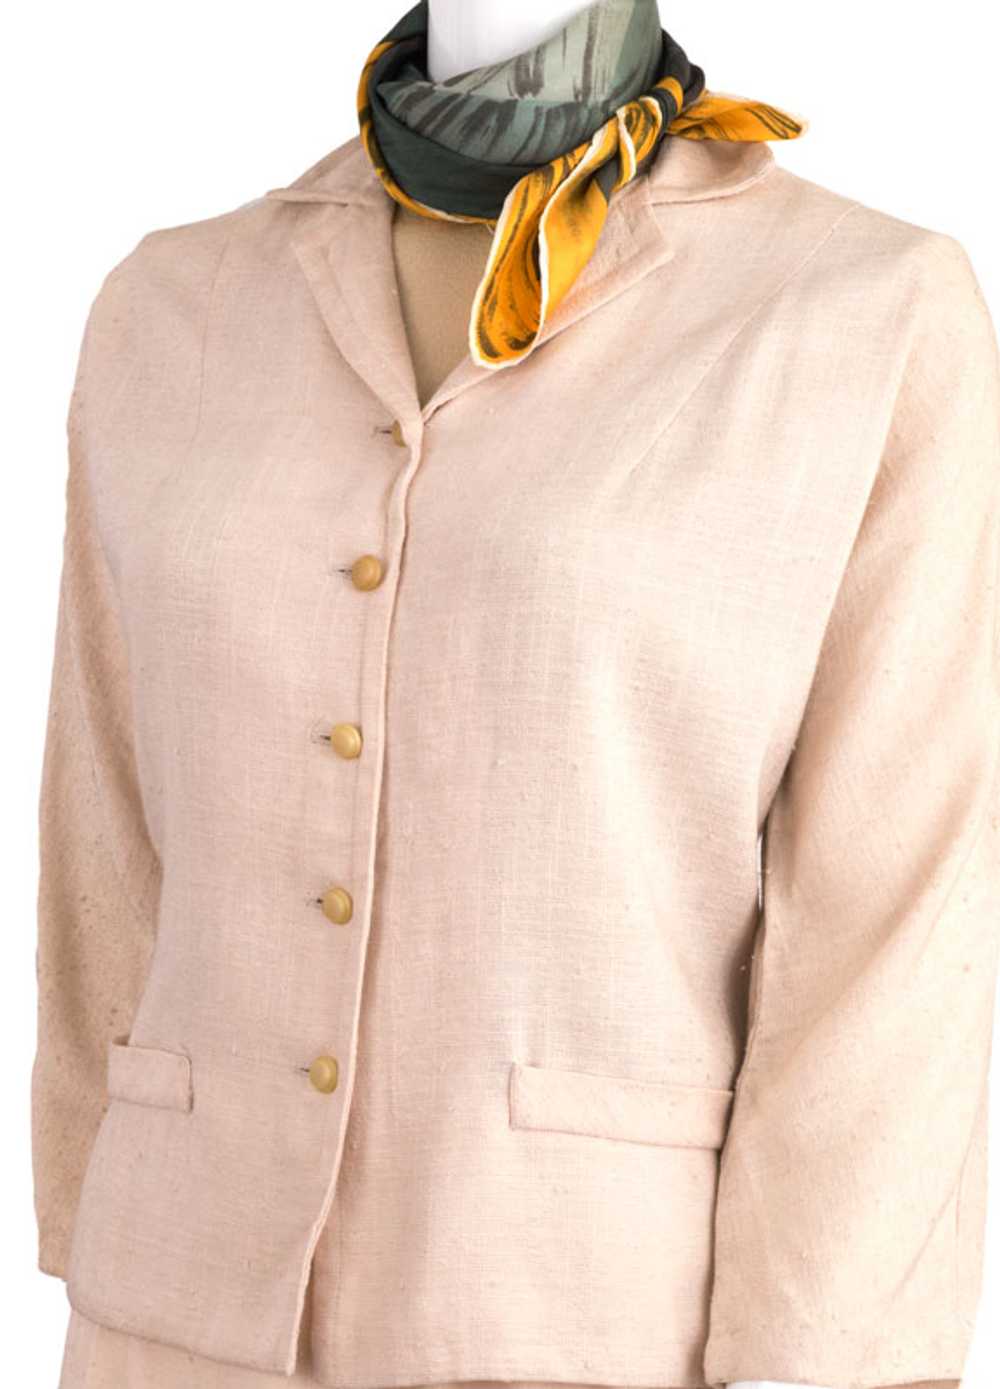 1950s Spring Ladies Suit - image 3